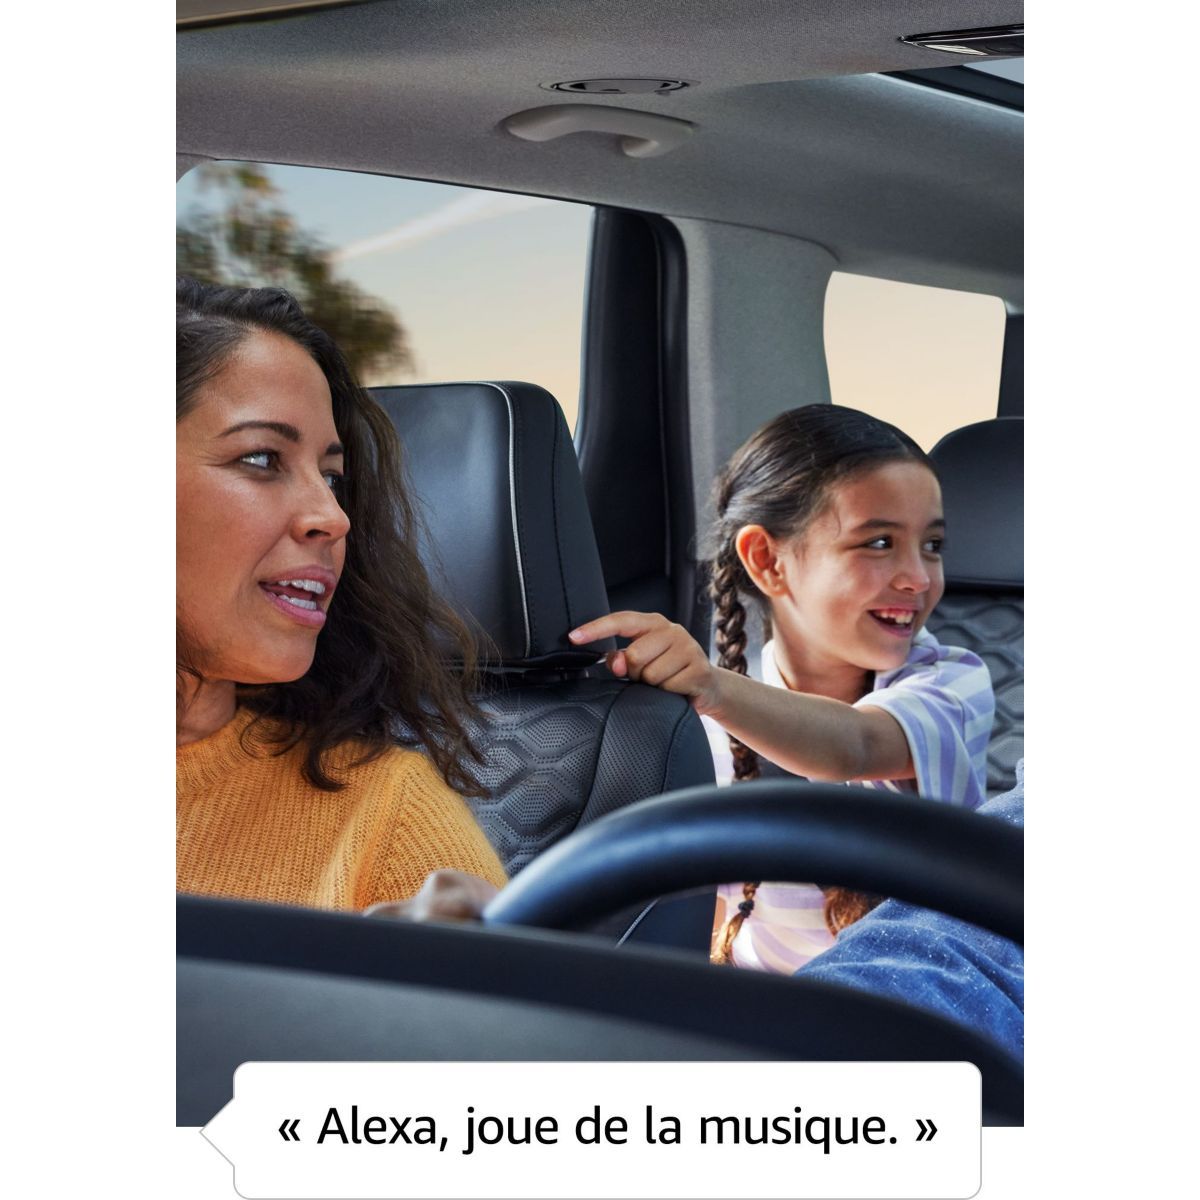 Alexa : l'assistant vocal dans les voitures - Auto Journal